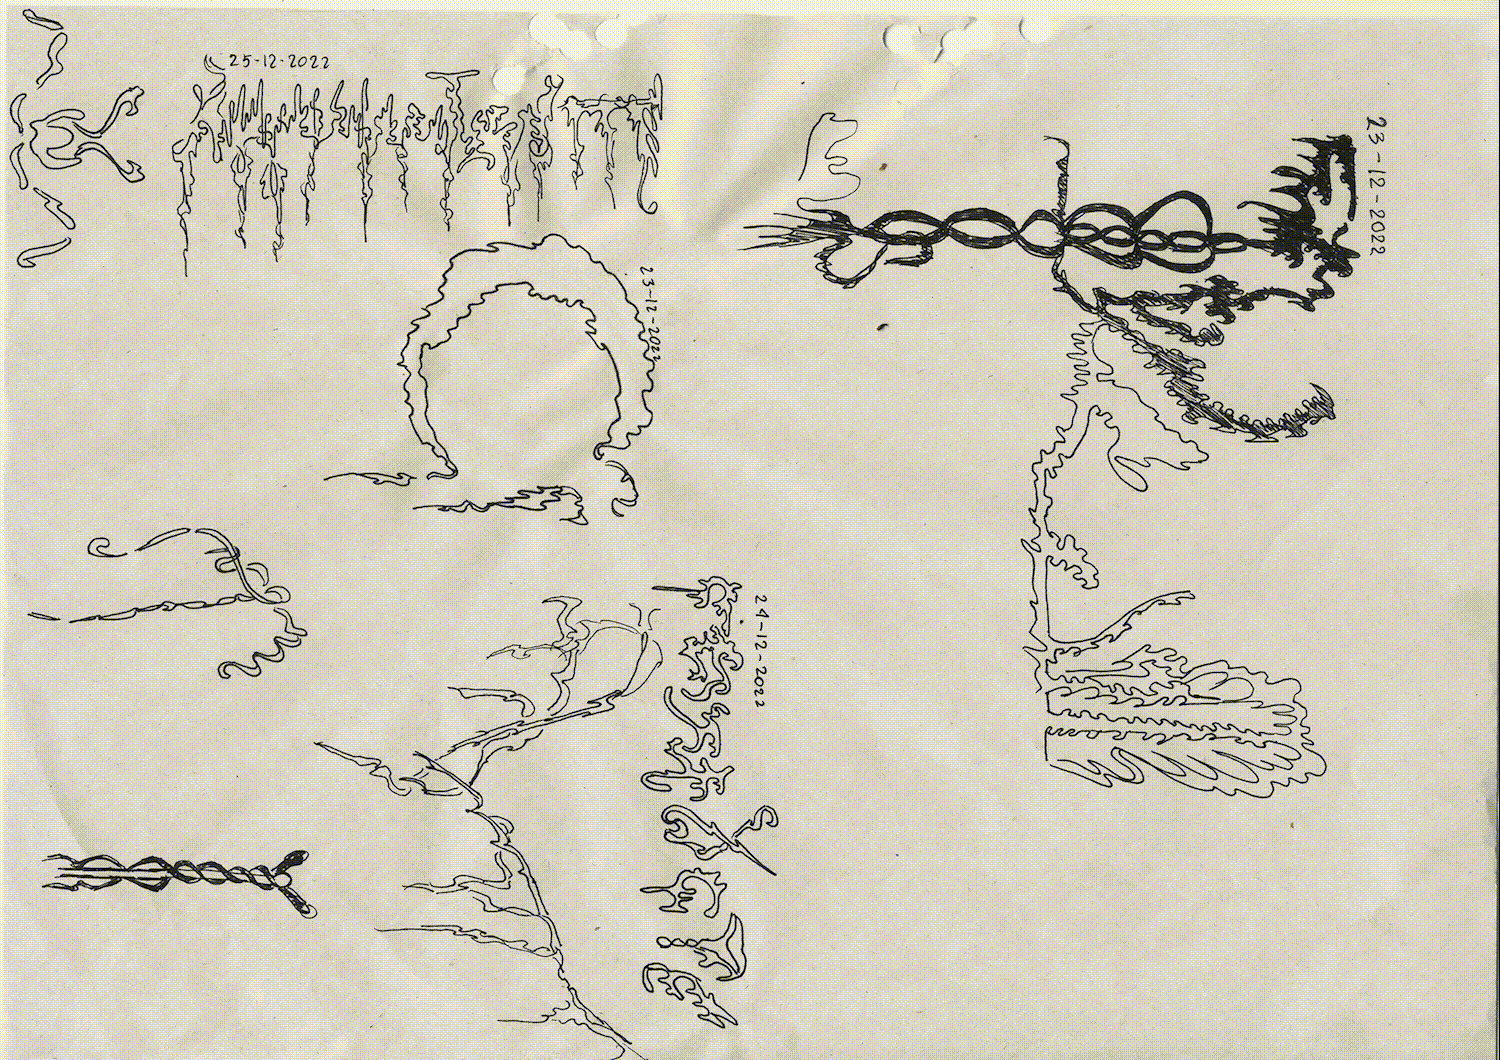 Титульное изображение для страницы события: лист бумаги с абстрактными изображениями, поверх проявляются пятна чернил и лепестки цветков